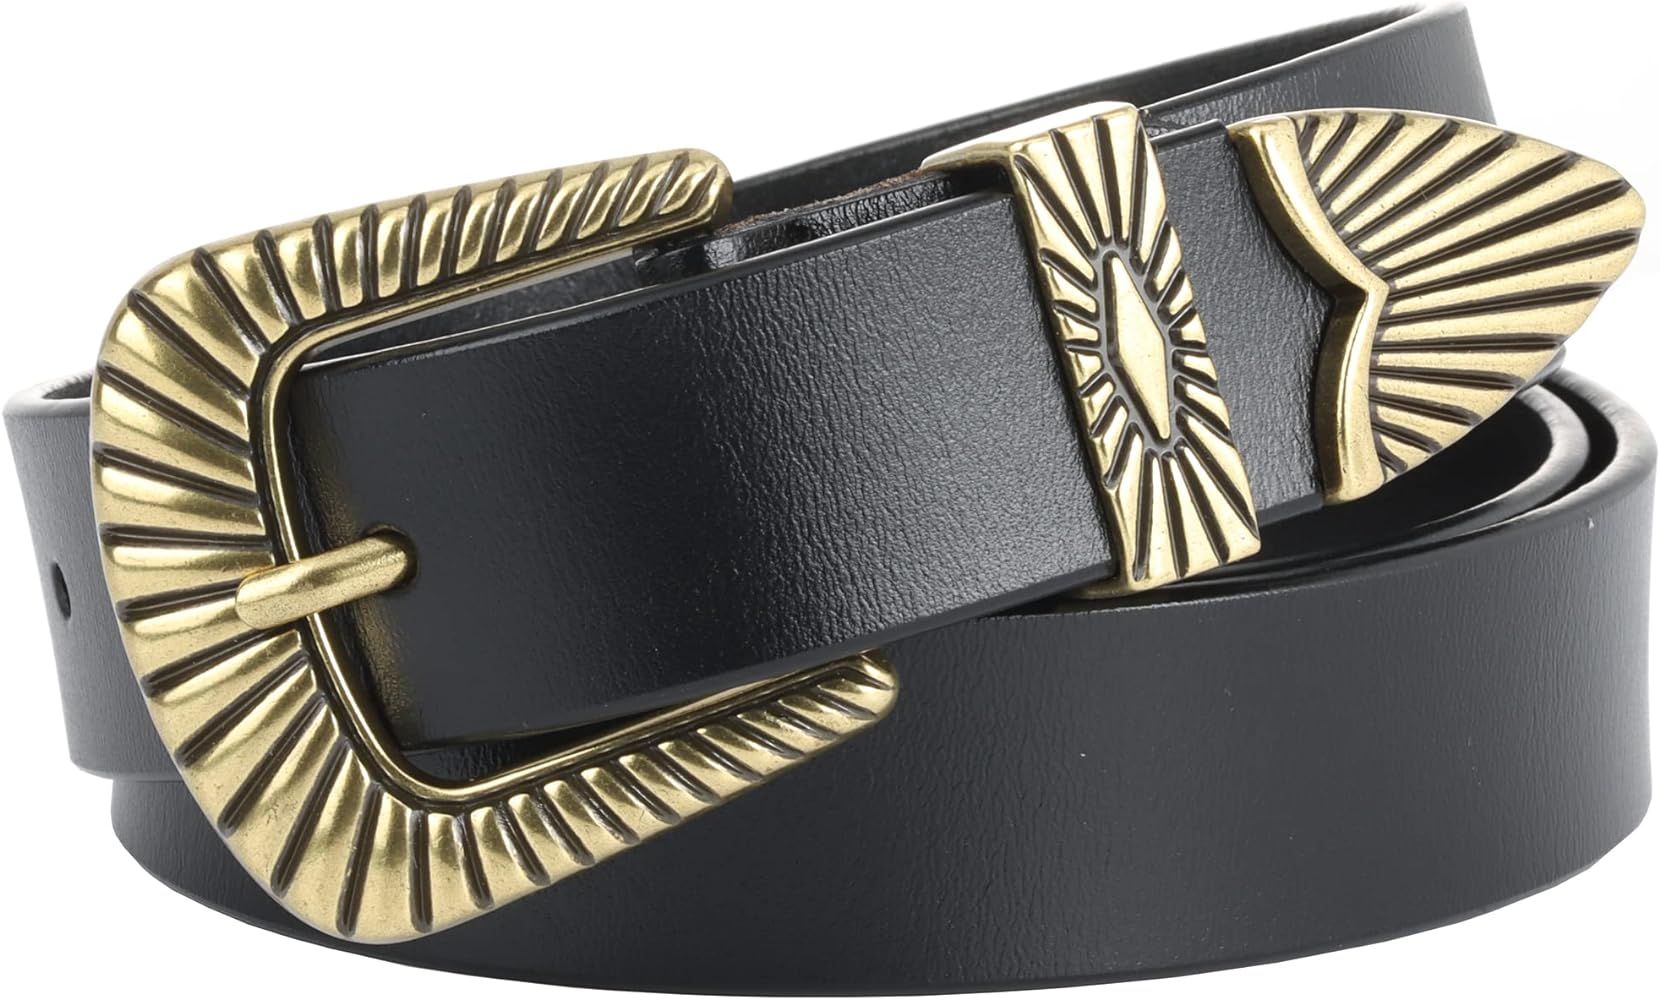 Belts for women Women's Belts Silver Gold Buckle leather belts Black Western belts Jeans Pants be... | Amazon (US)